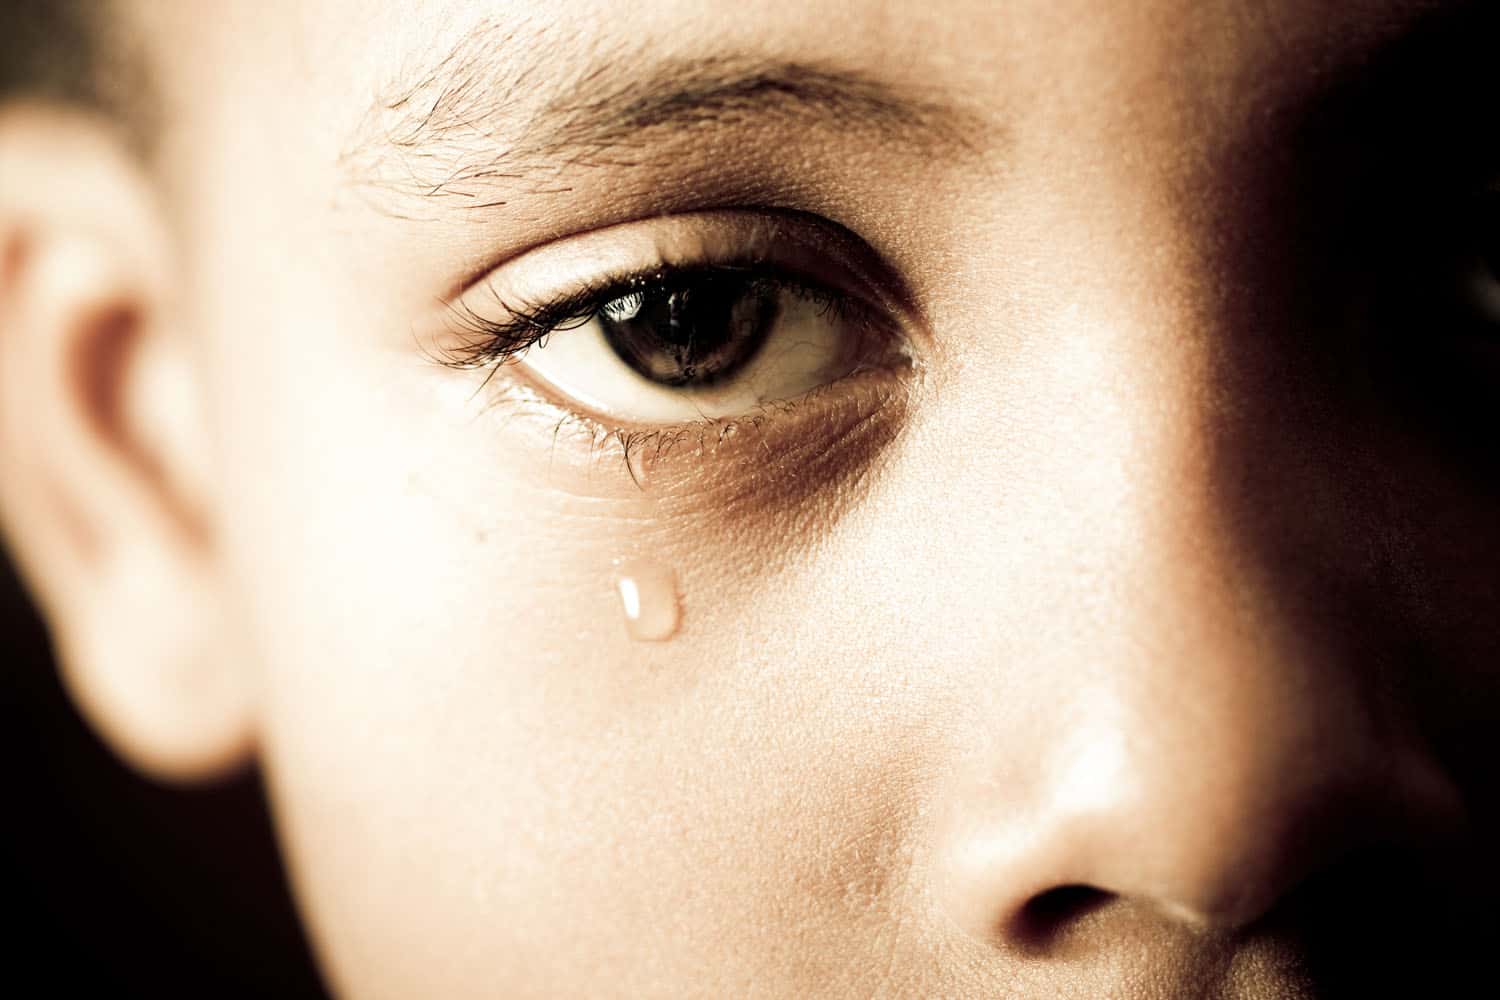 crying child upset abuse hurt